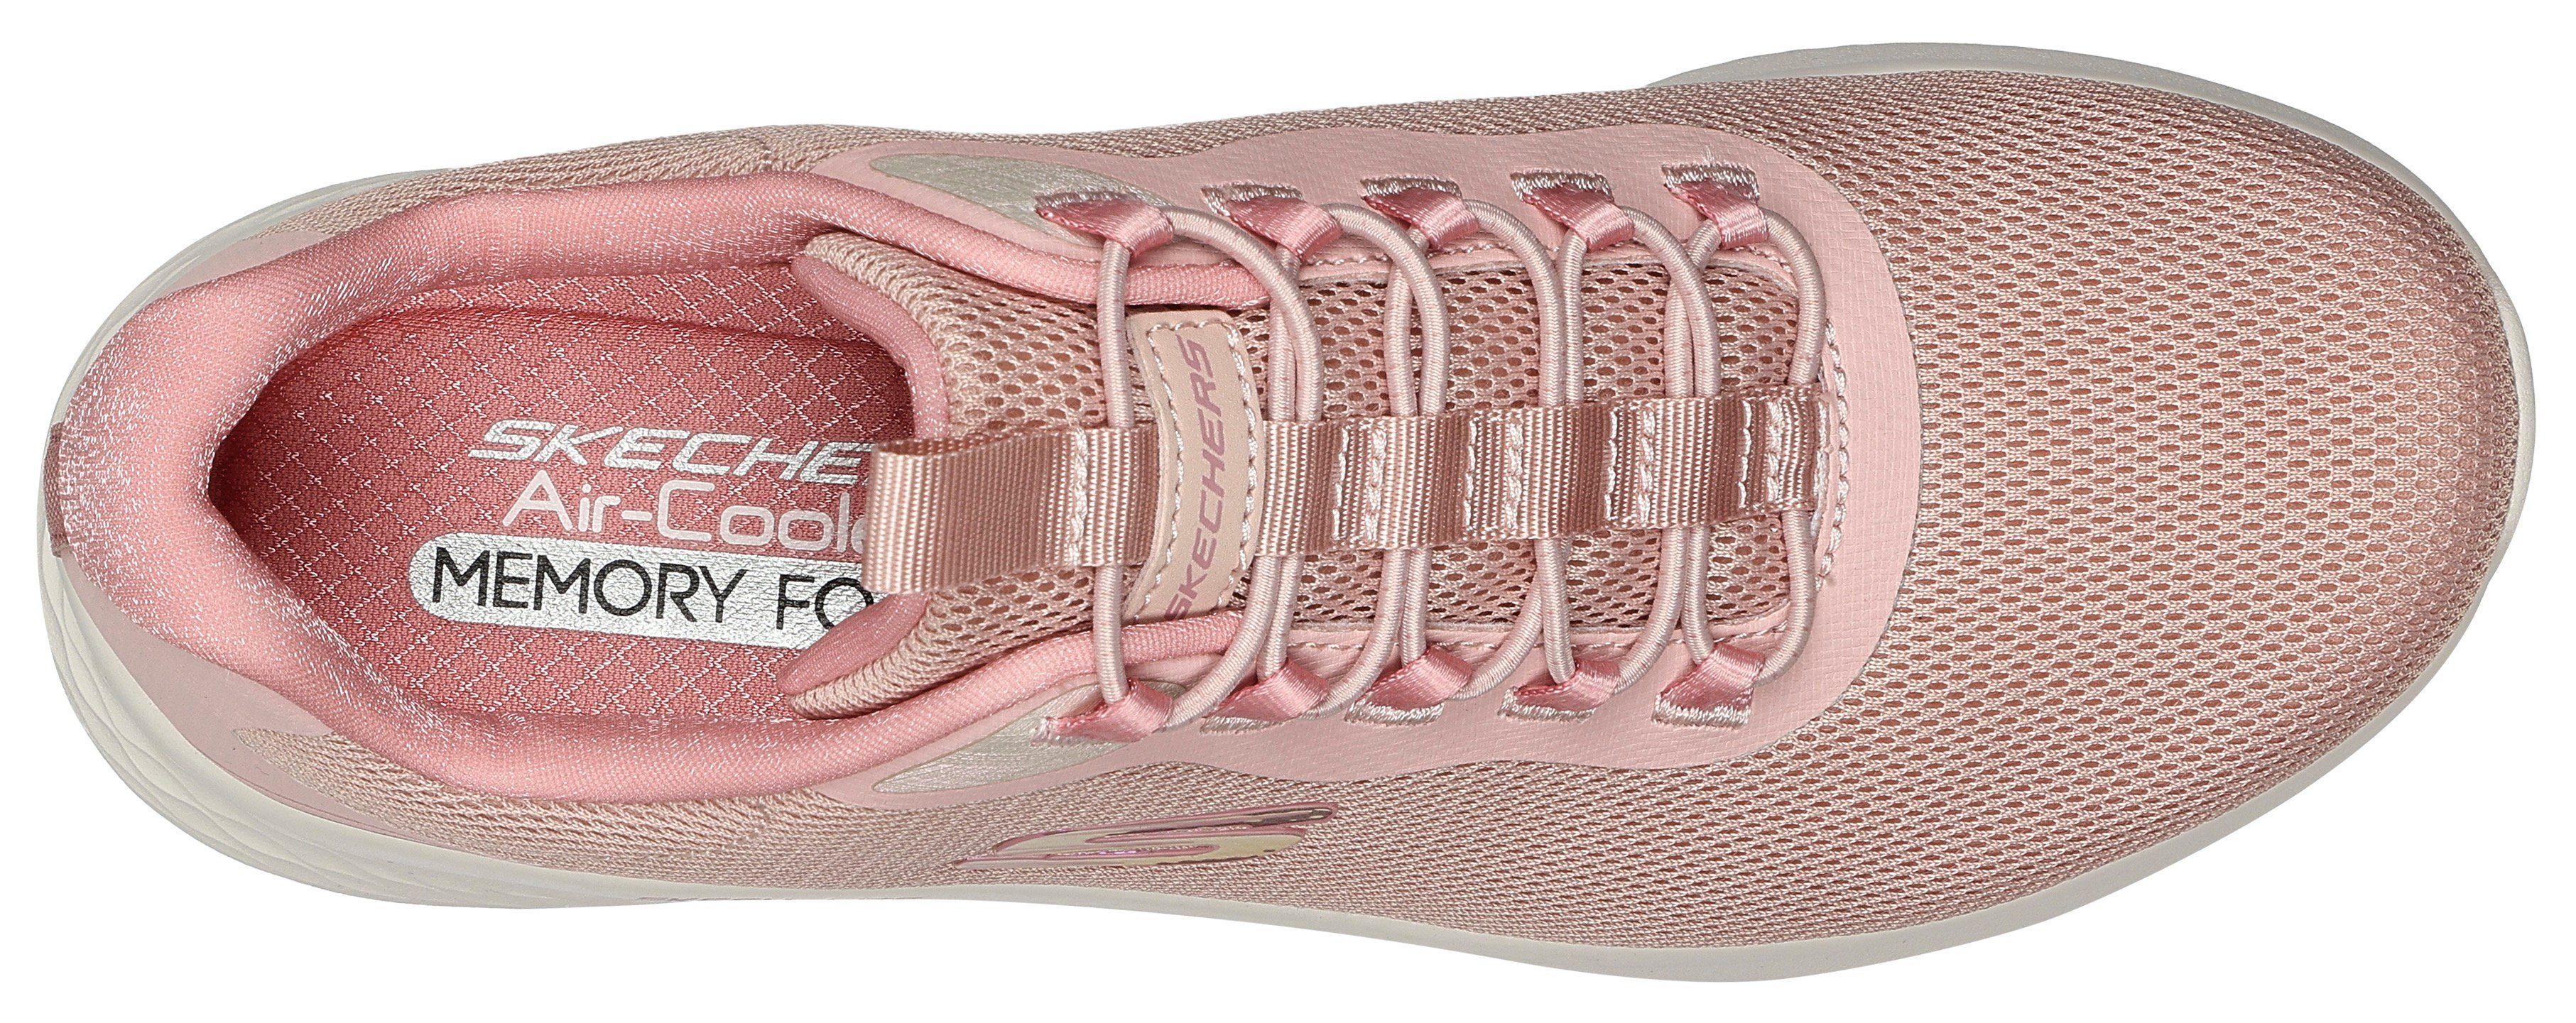 zum Gummizug Slip-On Sneaker mit SKECH-LITE rosa Schlupfen PRO- Skechers